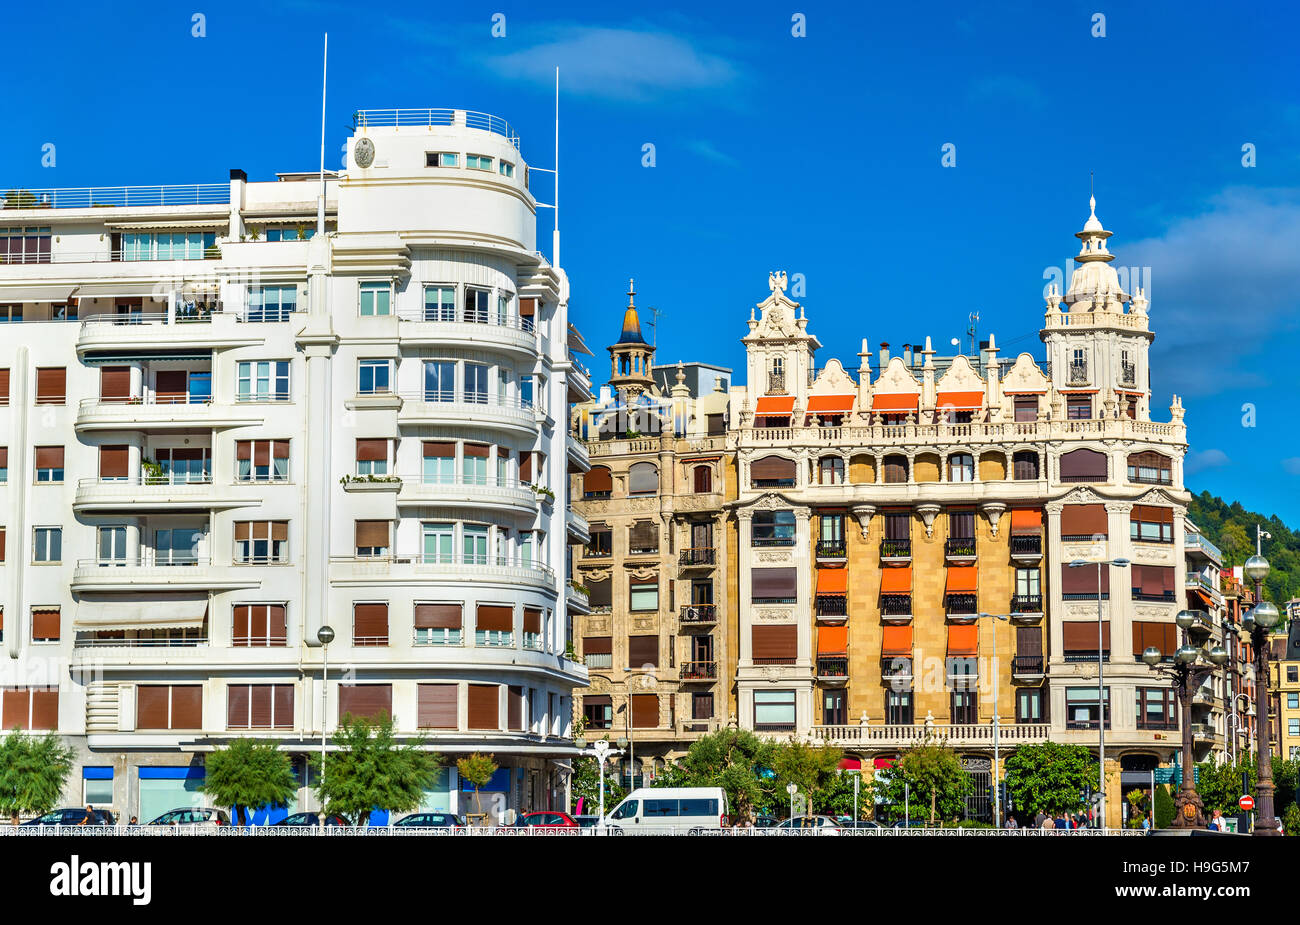 La ville de San Sebastian ou Donostia - Espagne Banque D'Images